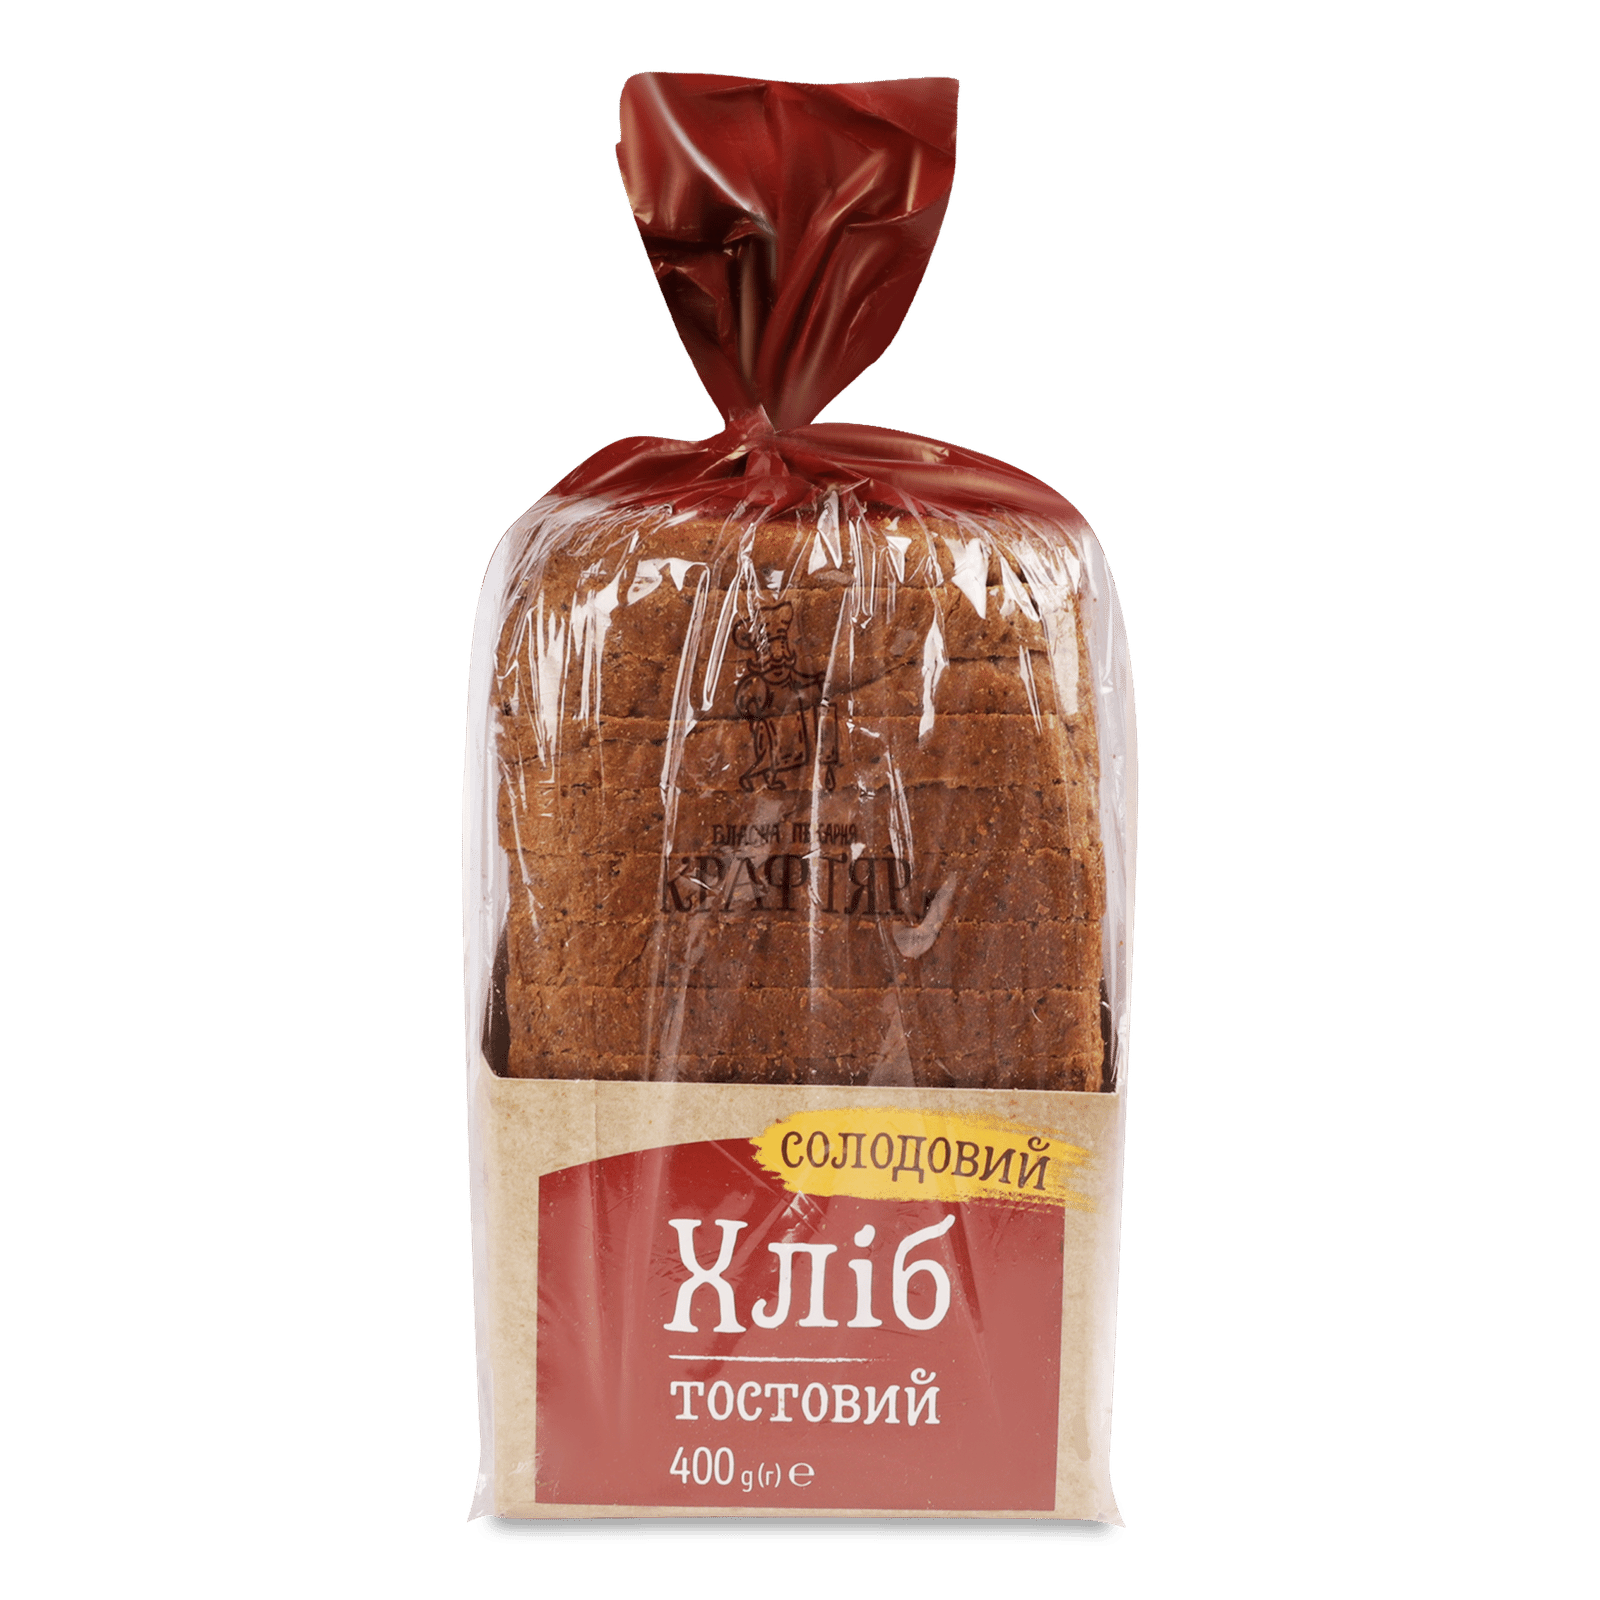 Хліб «Крафтяр» тостовий солодовий - 1